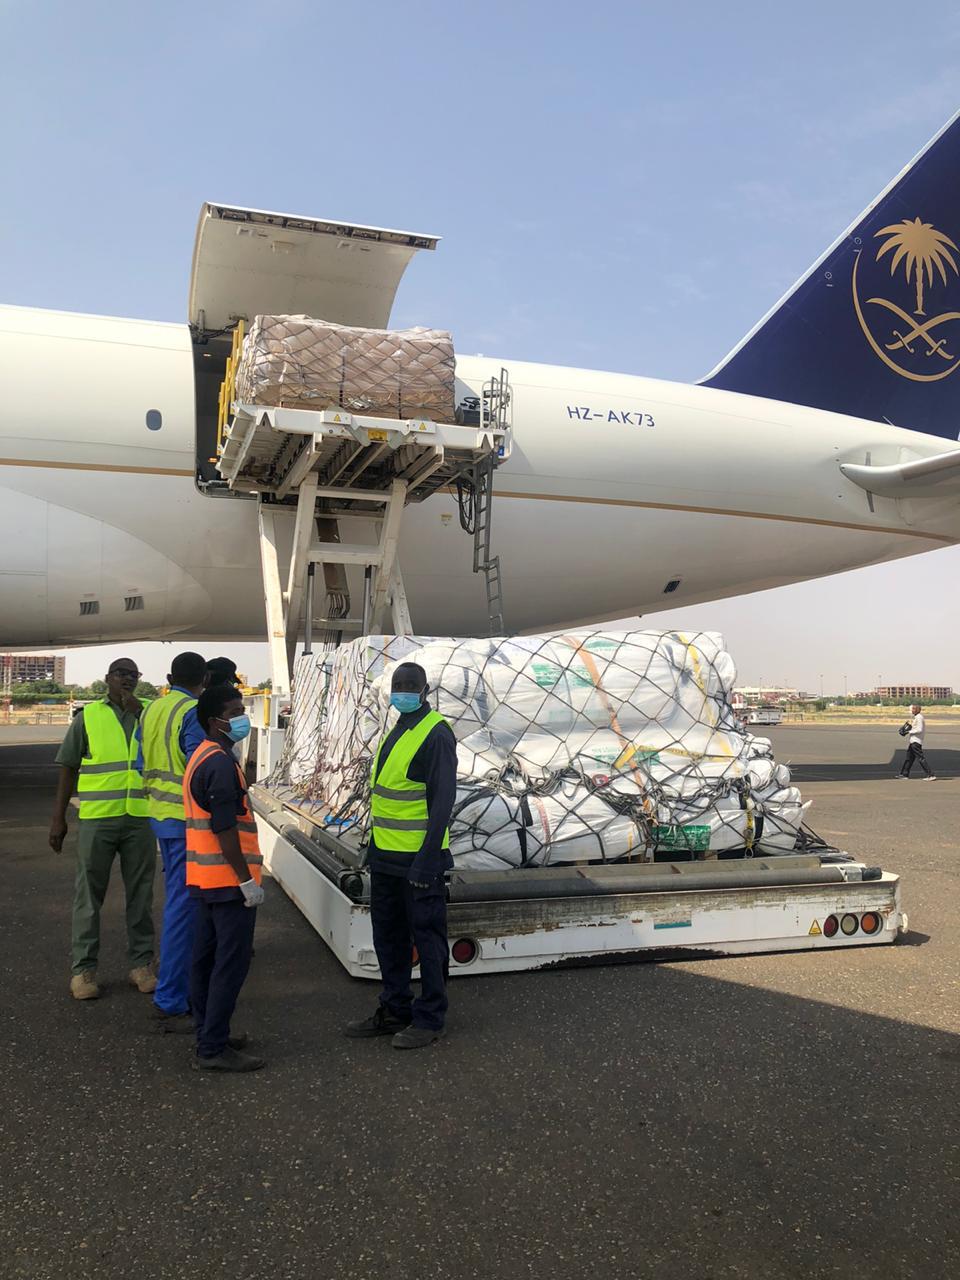 وصول طائرة إغاثية سعودية تحمل مساعدات إيوائية وغذائية إلى السودان